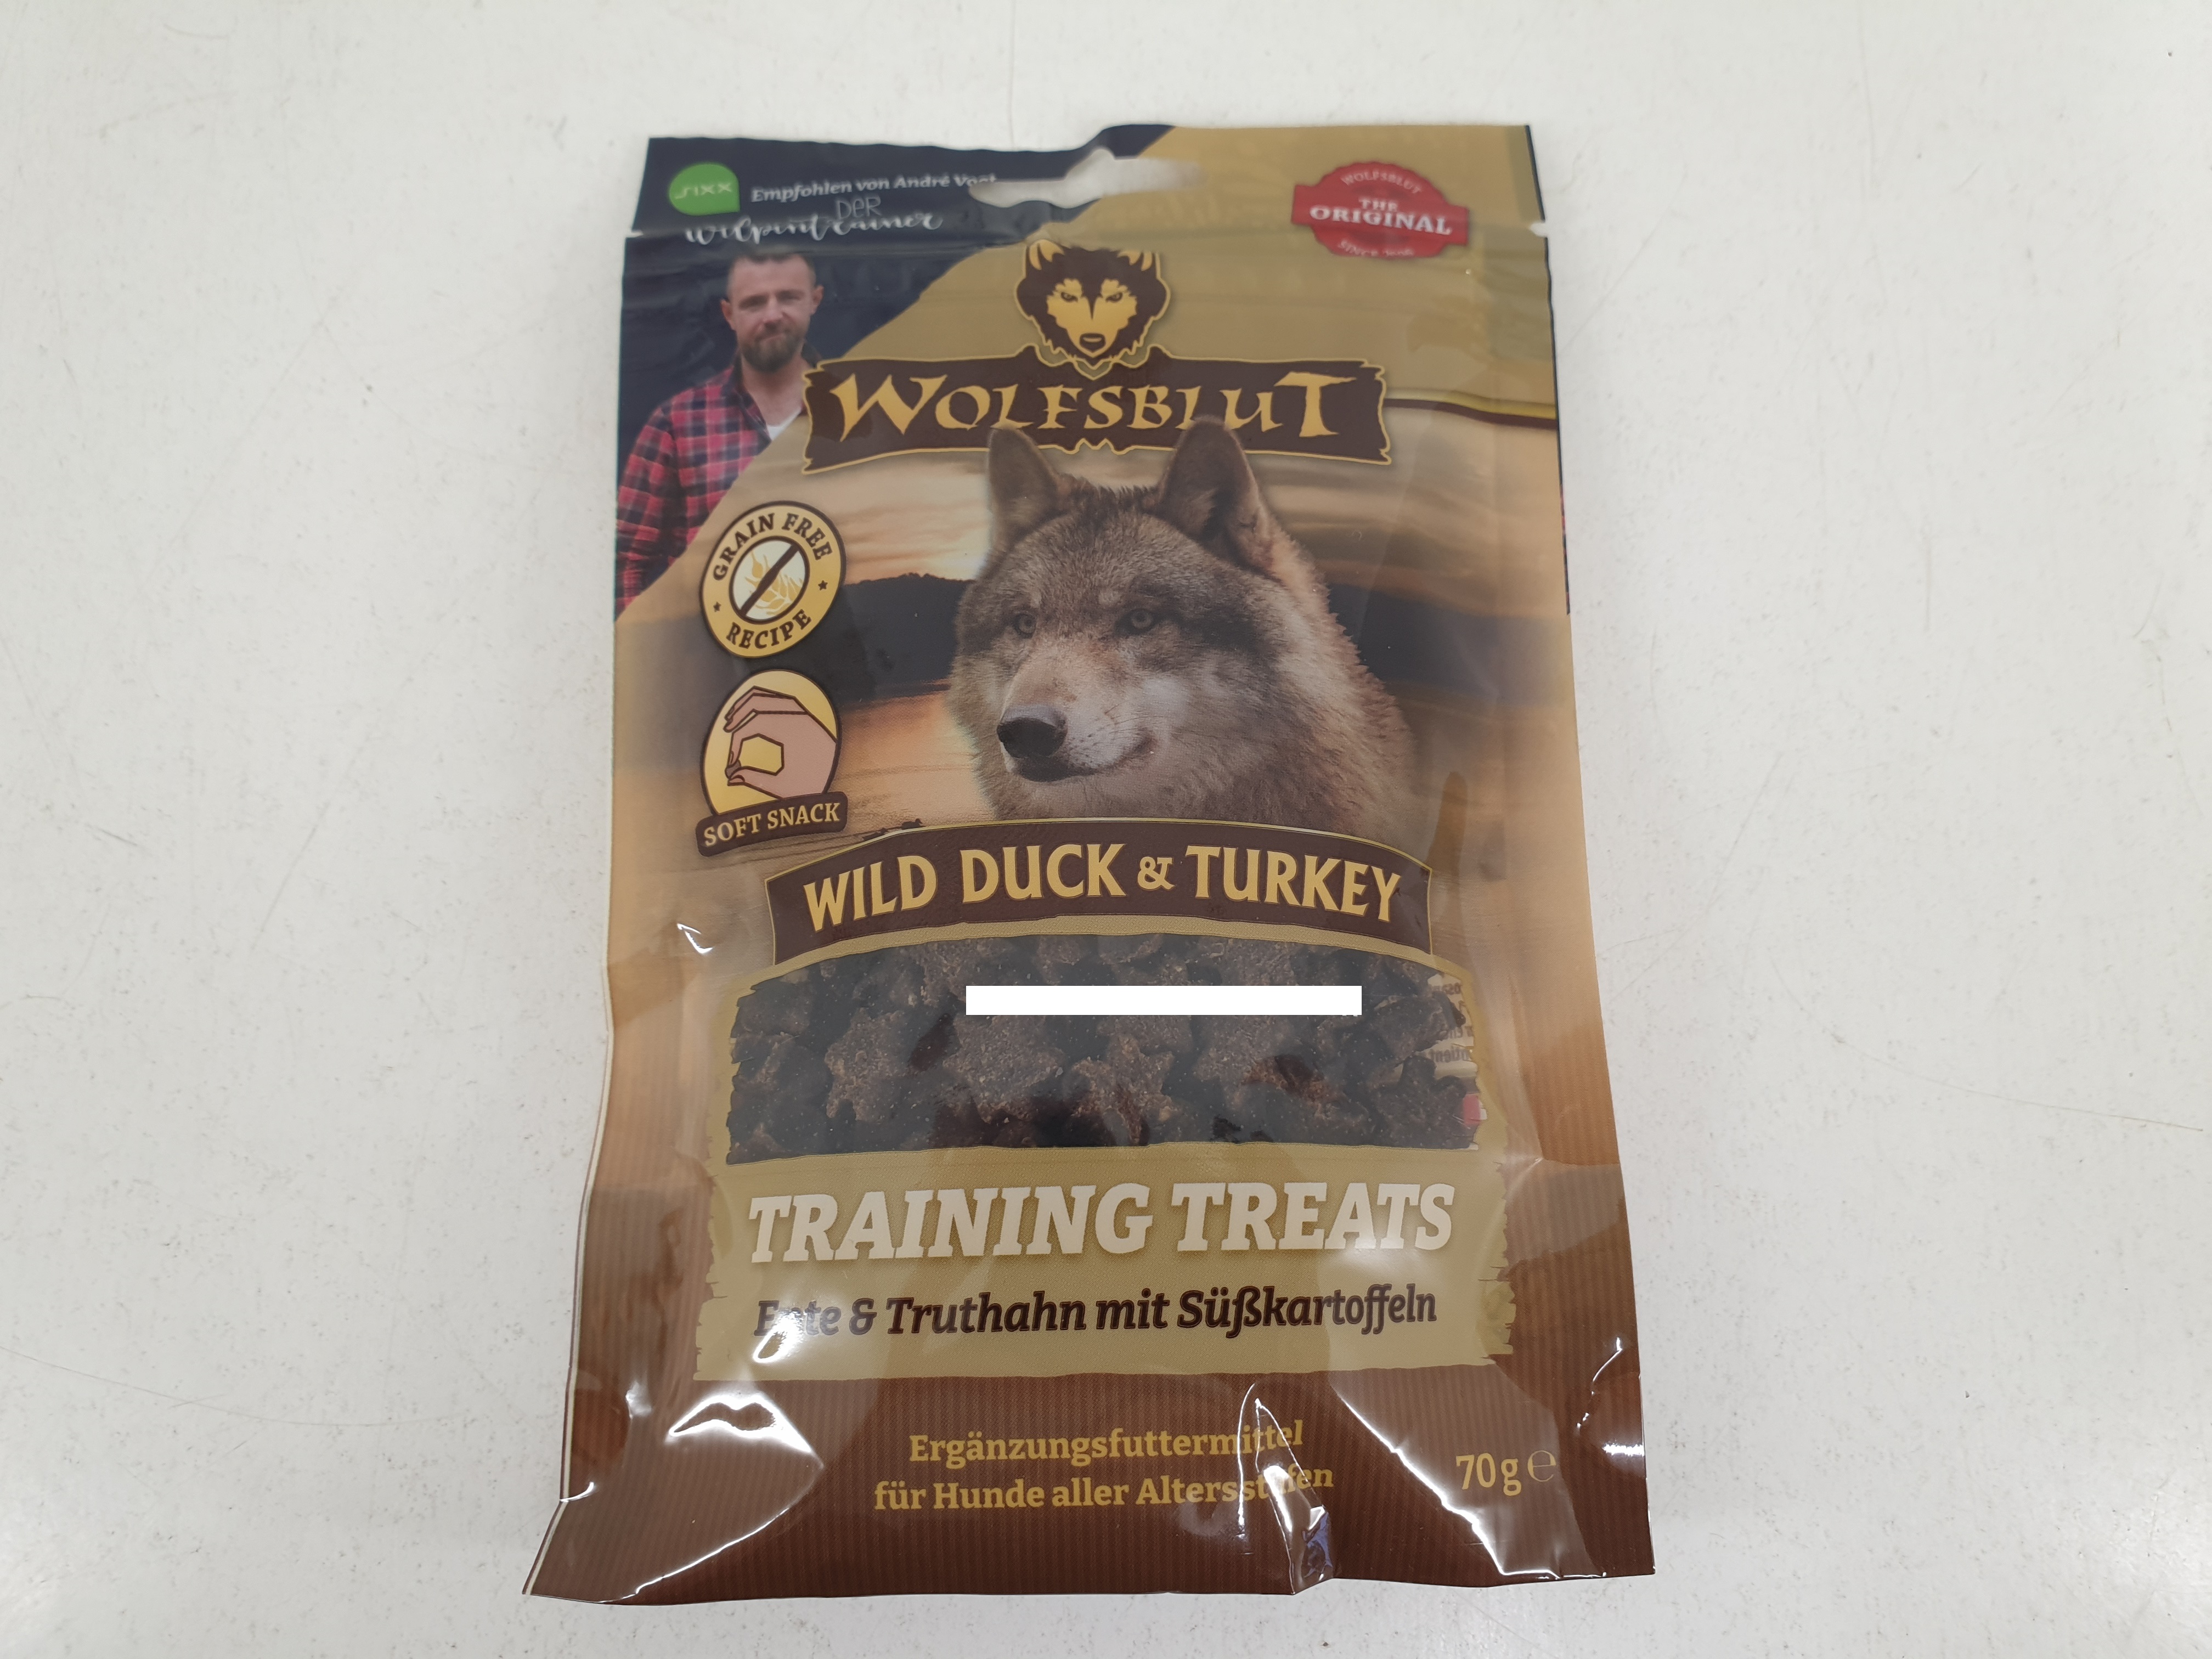 Wolfsblut Training Treats - Wild Duck & Turkey - Ente, Truthahn mit Süßkartoffel 70g